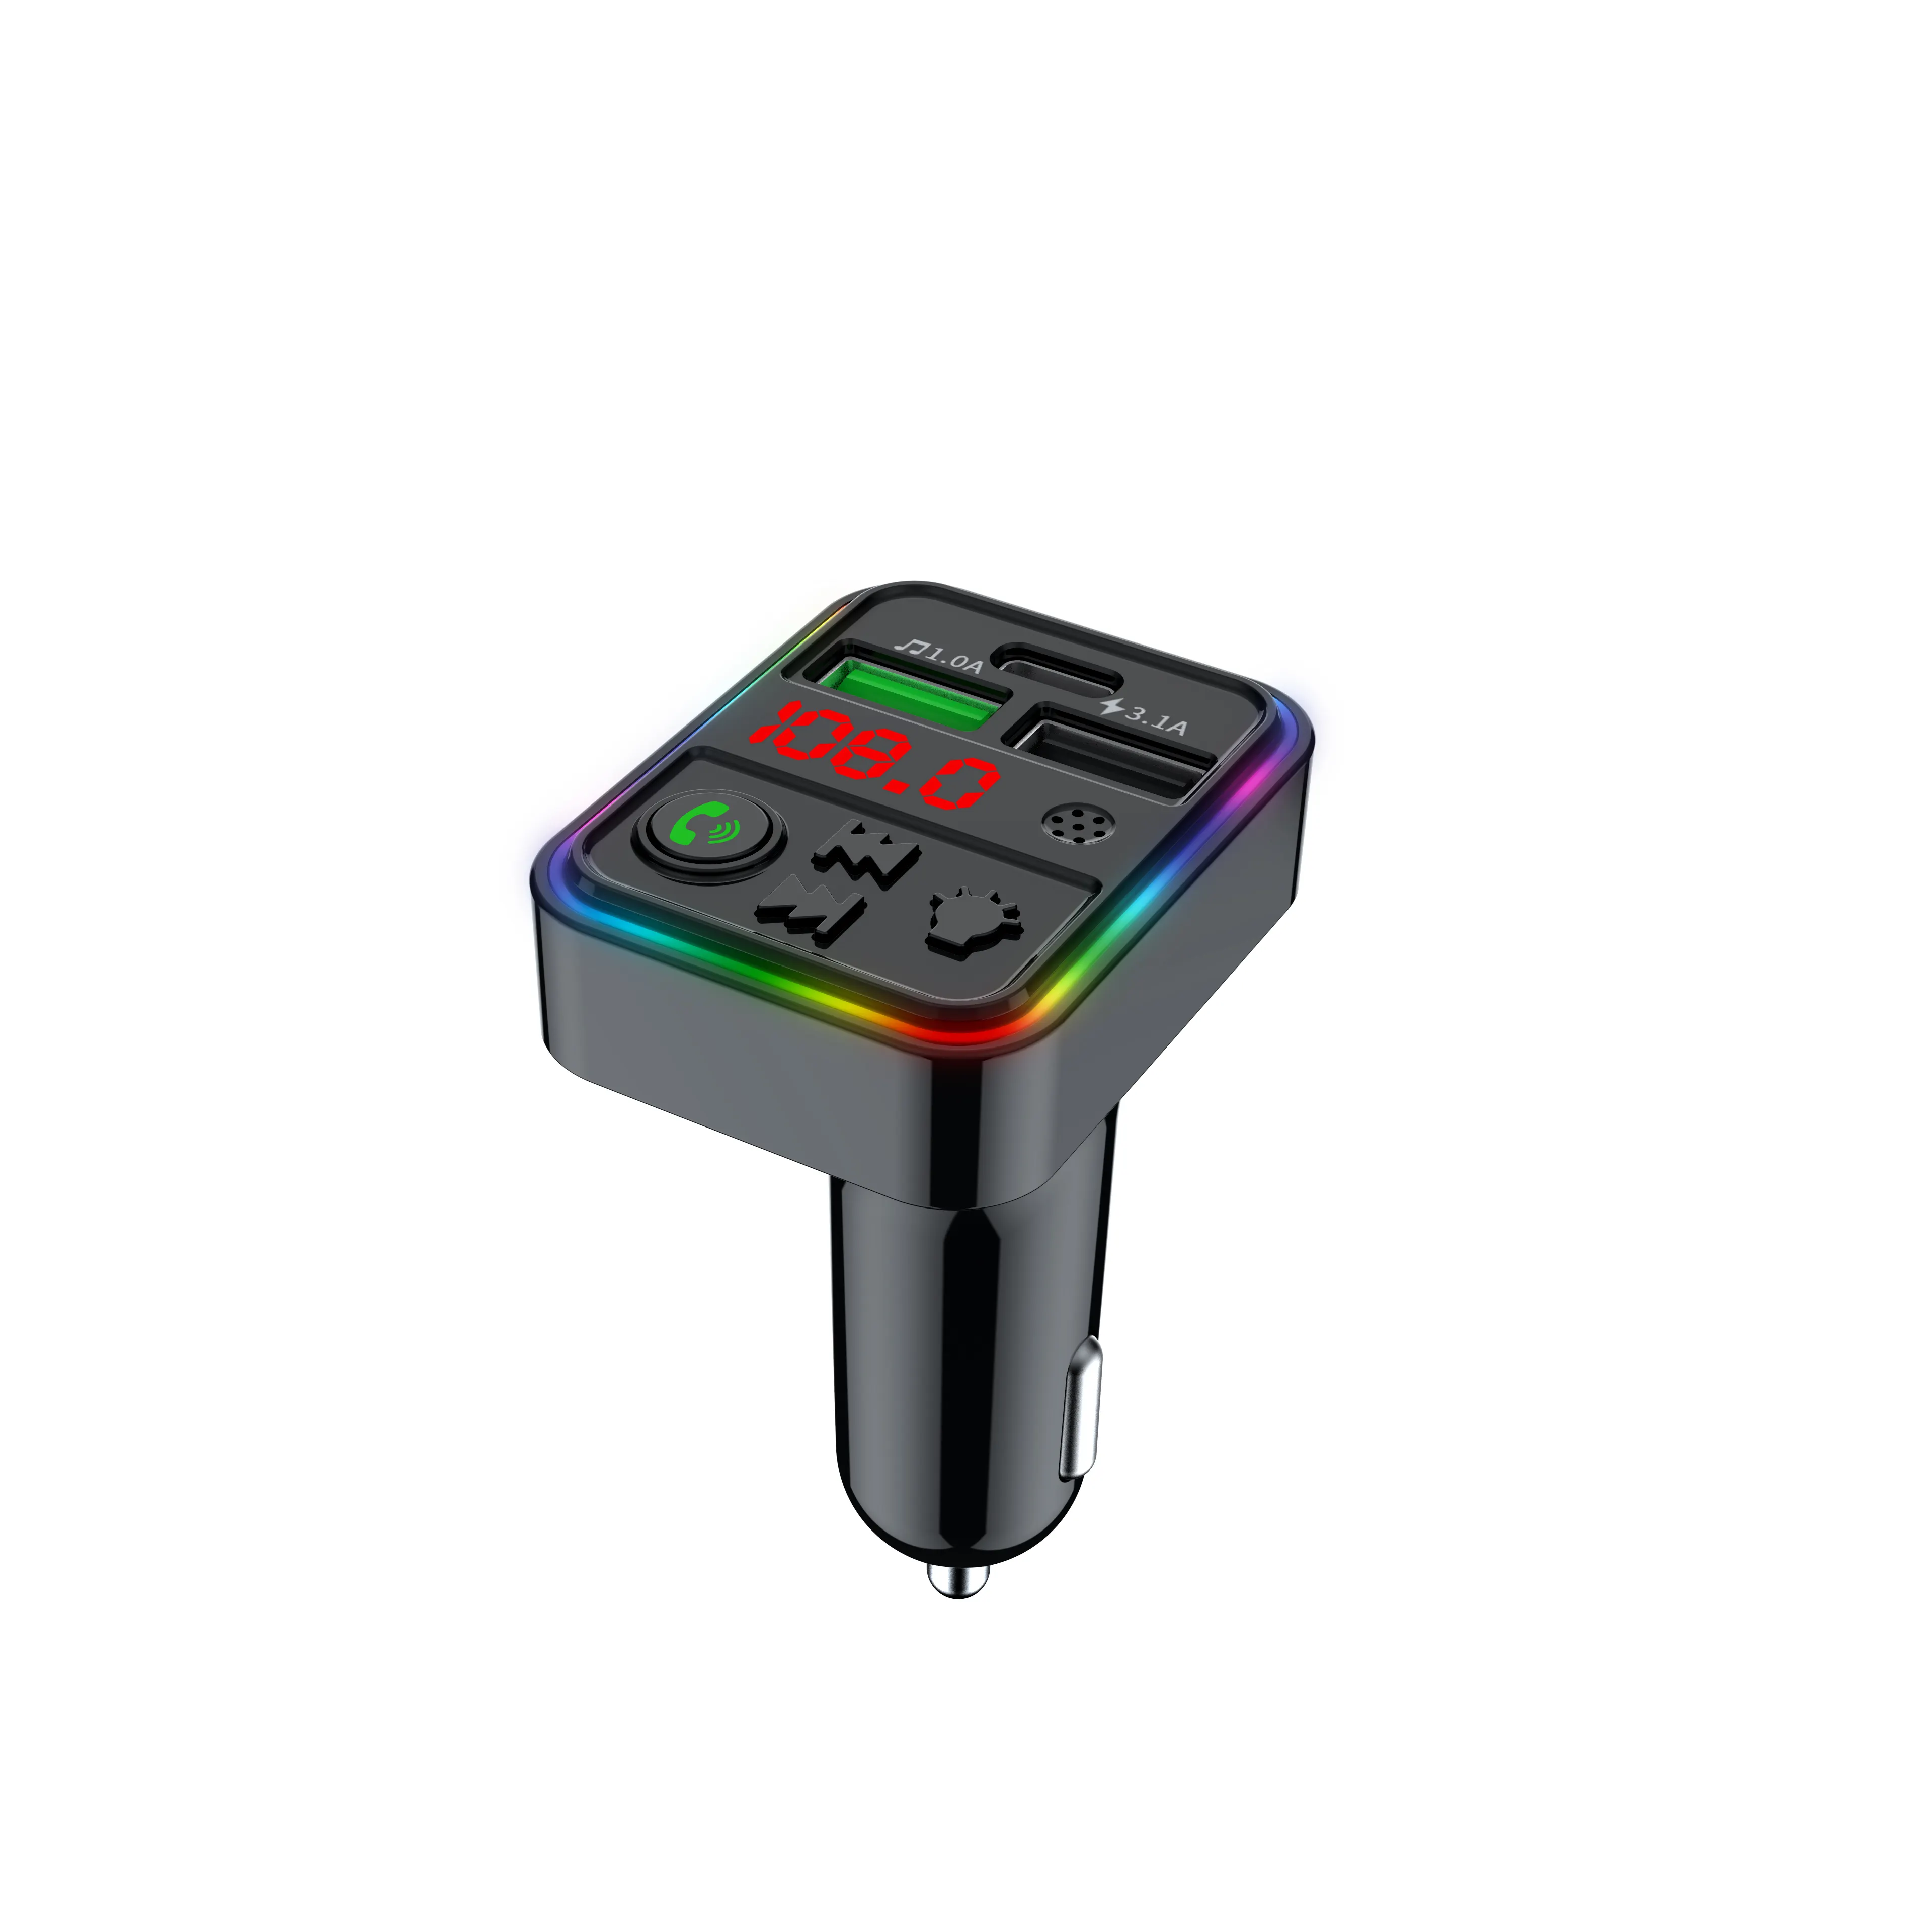 F18 FM 송신기 자동차 급속 충전기 듀얼 USB 타입 C 고속 충전 블루투스 5.0 자동차 키트 오디오 MP3 플레이어 FM 변조기